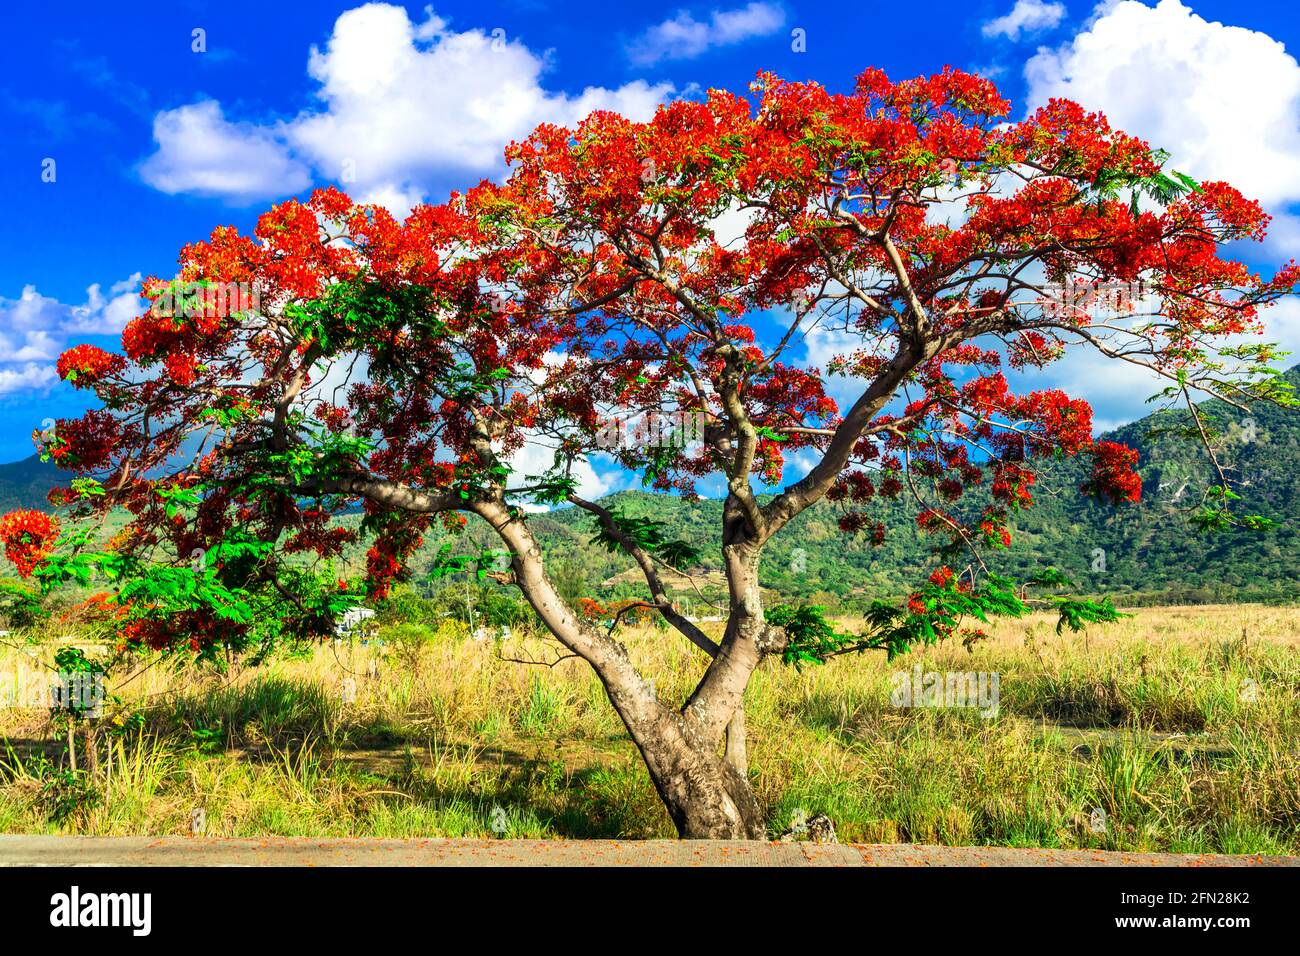 Exotische Natur der tropischen Insel Mauritius. Rote Blumen blühender Baum Flamboyant - Flammenbaum Stockfoto